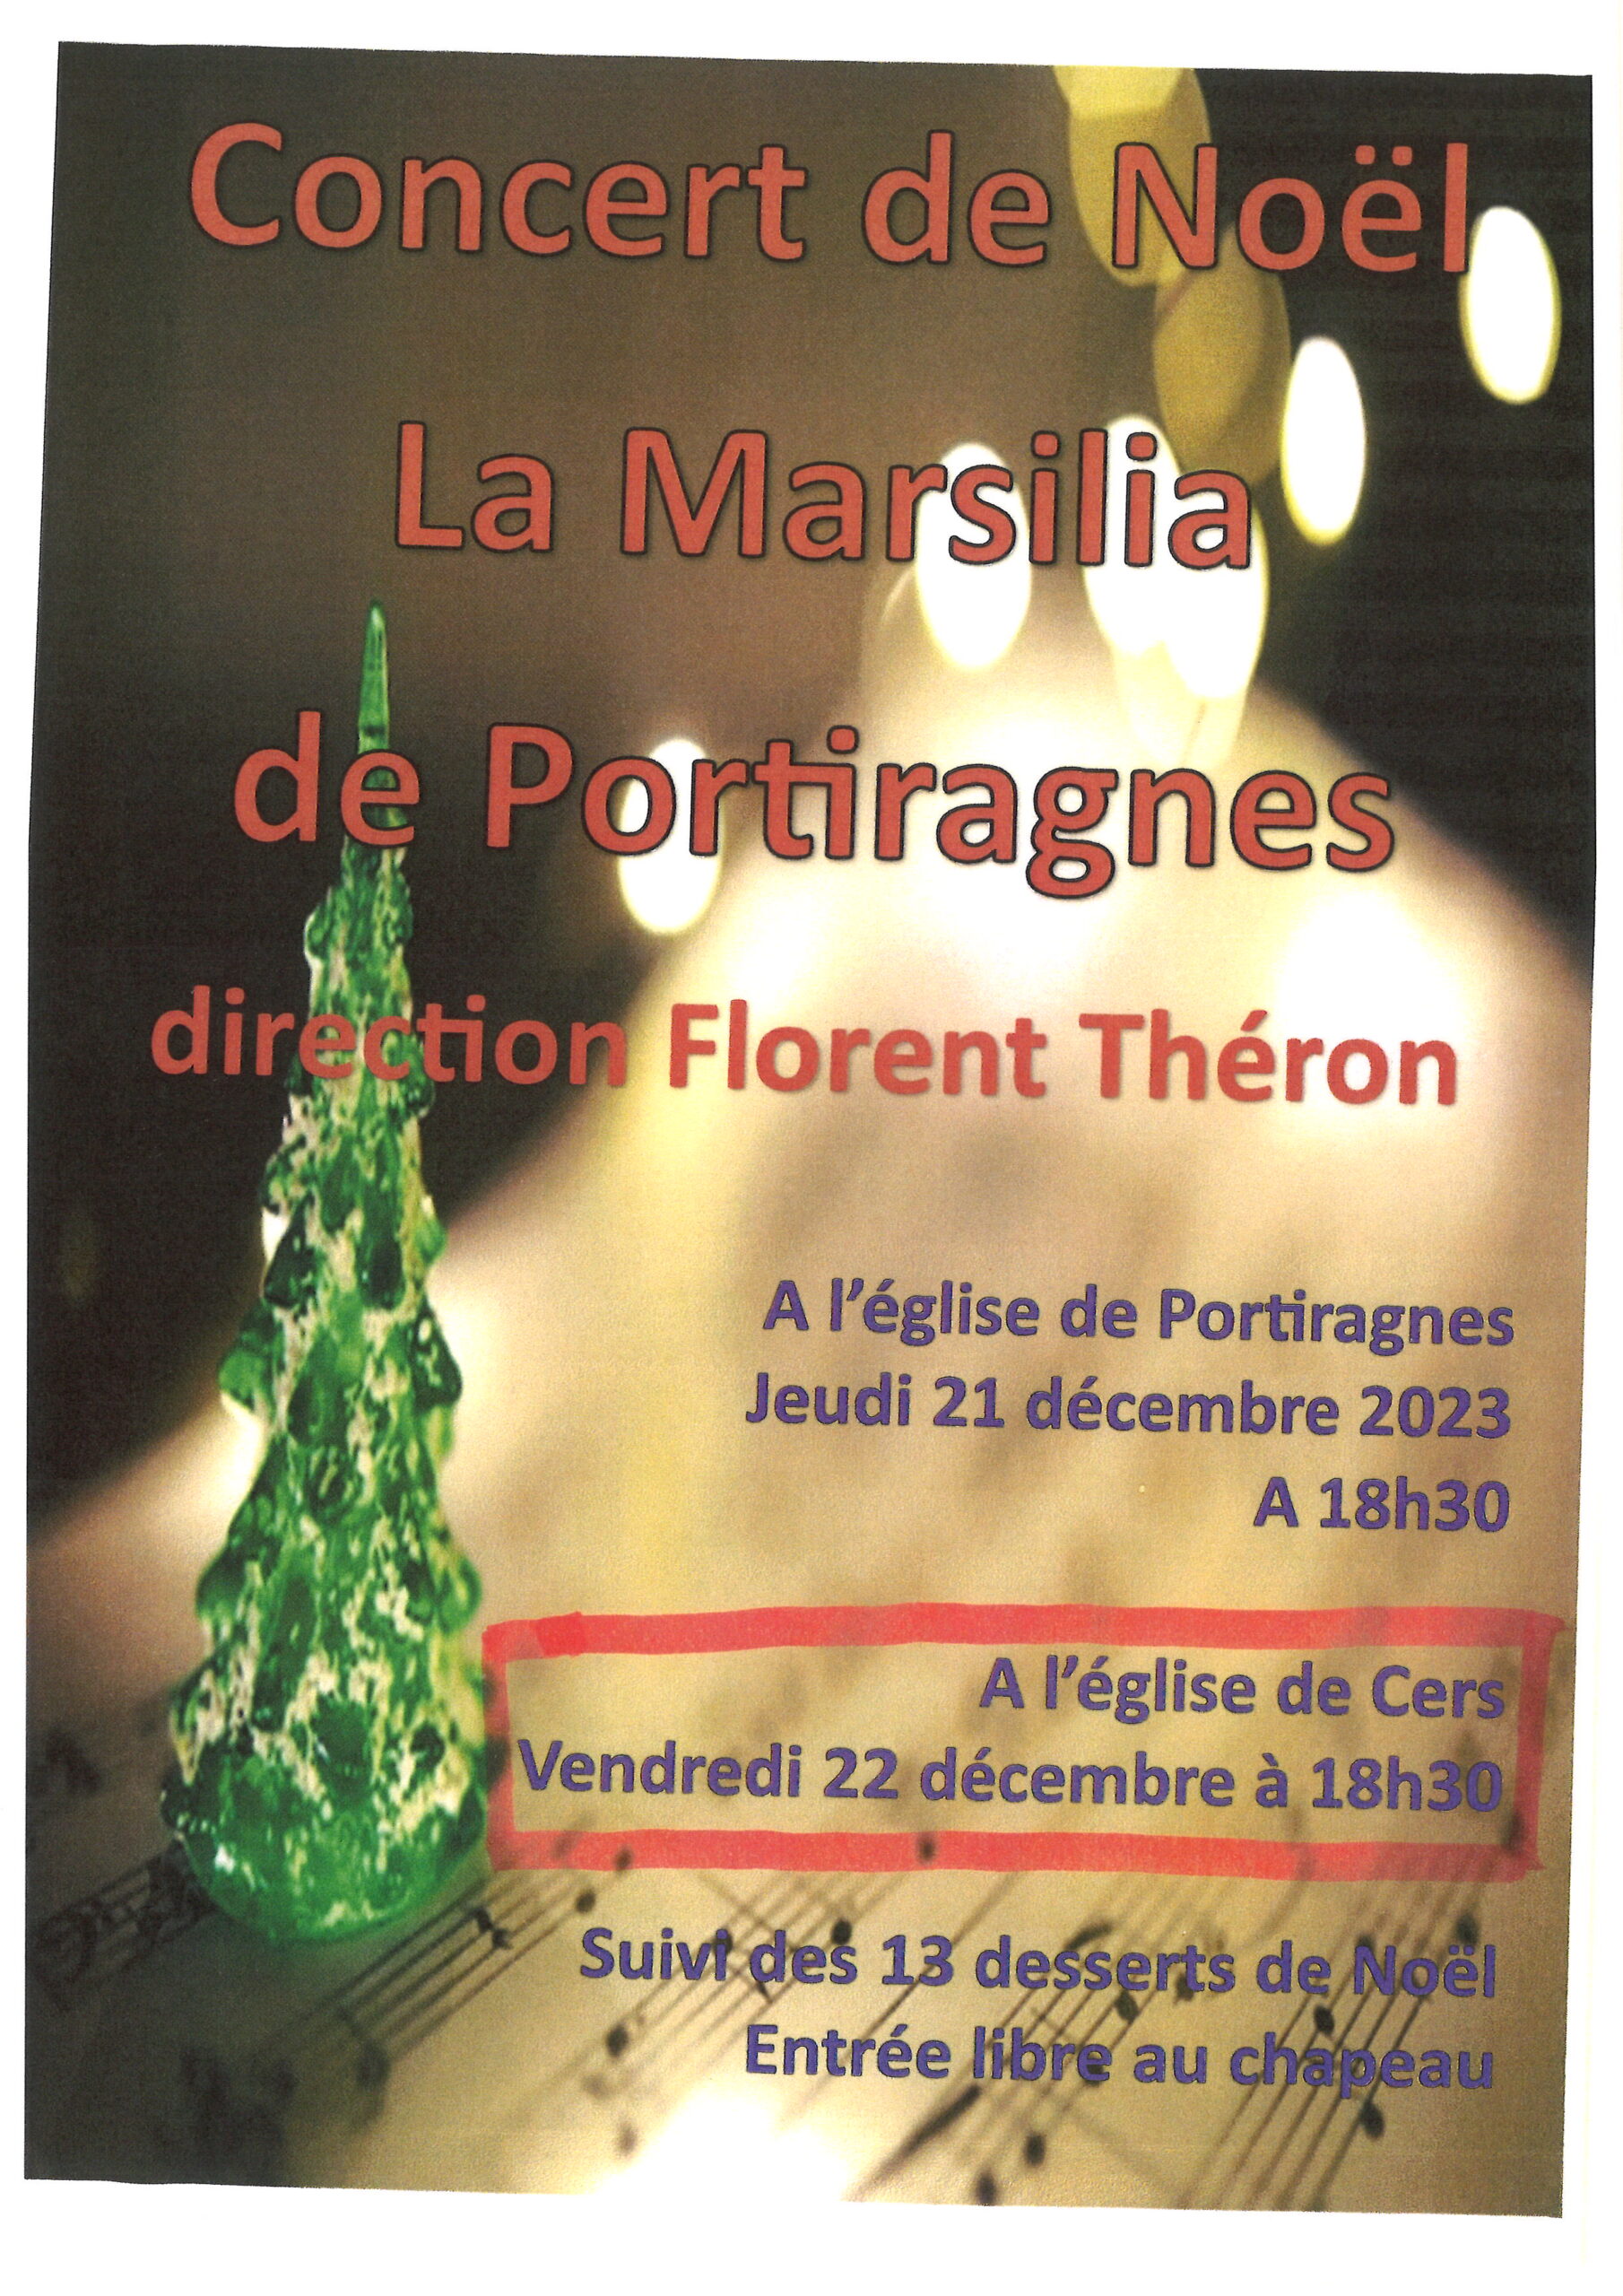 You are currently viewing Concert de Noël de la Marsilia le 22 décembre 2023